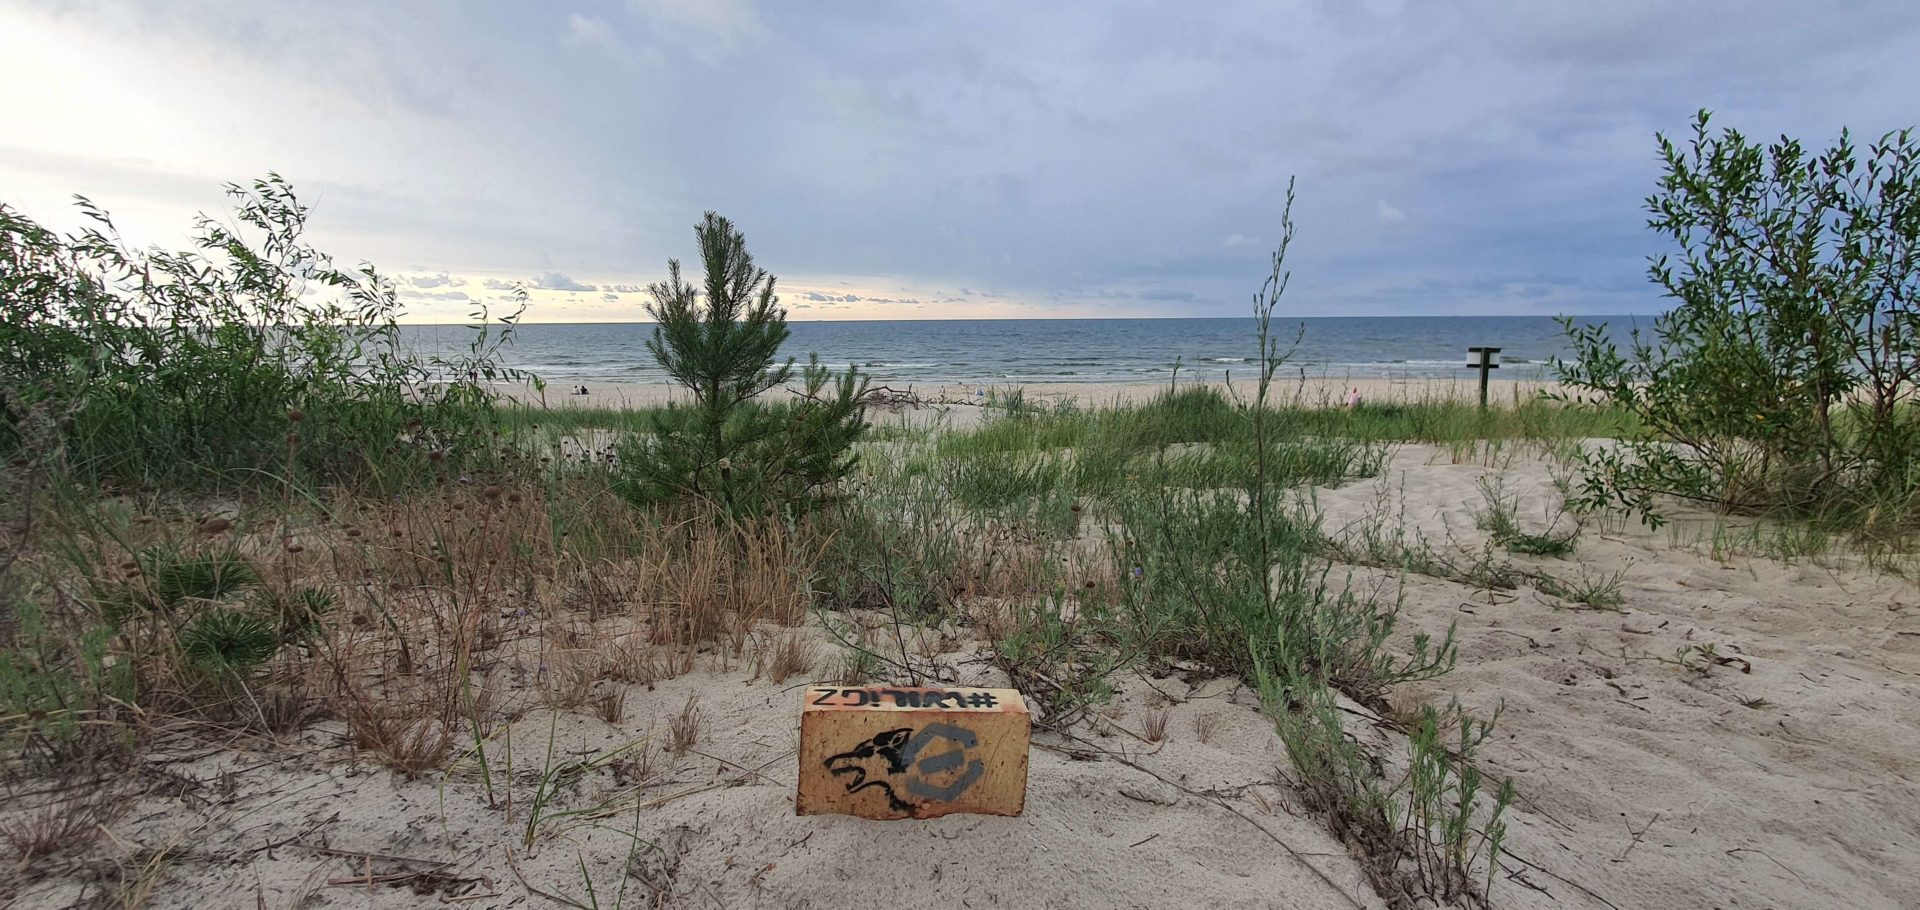 Pomalowana cegła z szarym logiem WRSS oraz czarnym kształtem wilka leży na plaży porośniętej niewielką ilością zieleni. Przed nią fale morza.